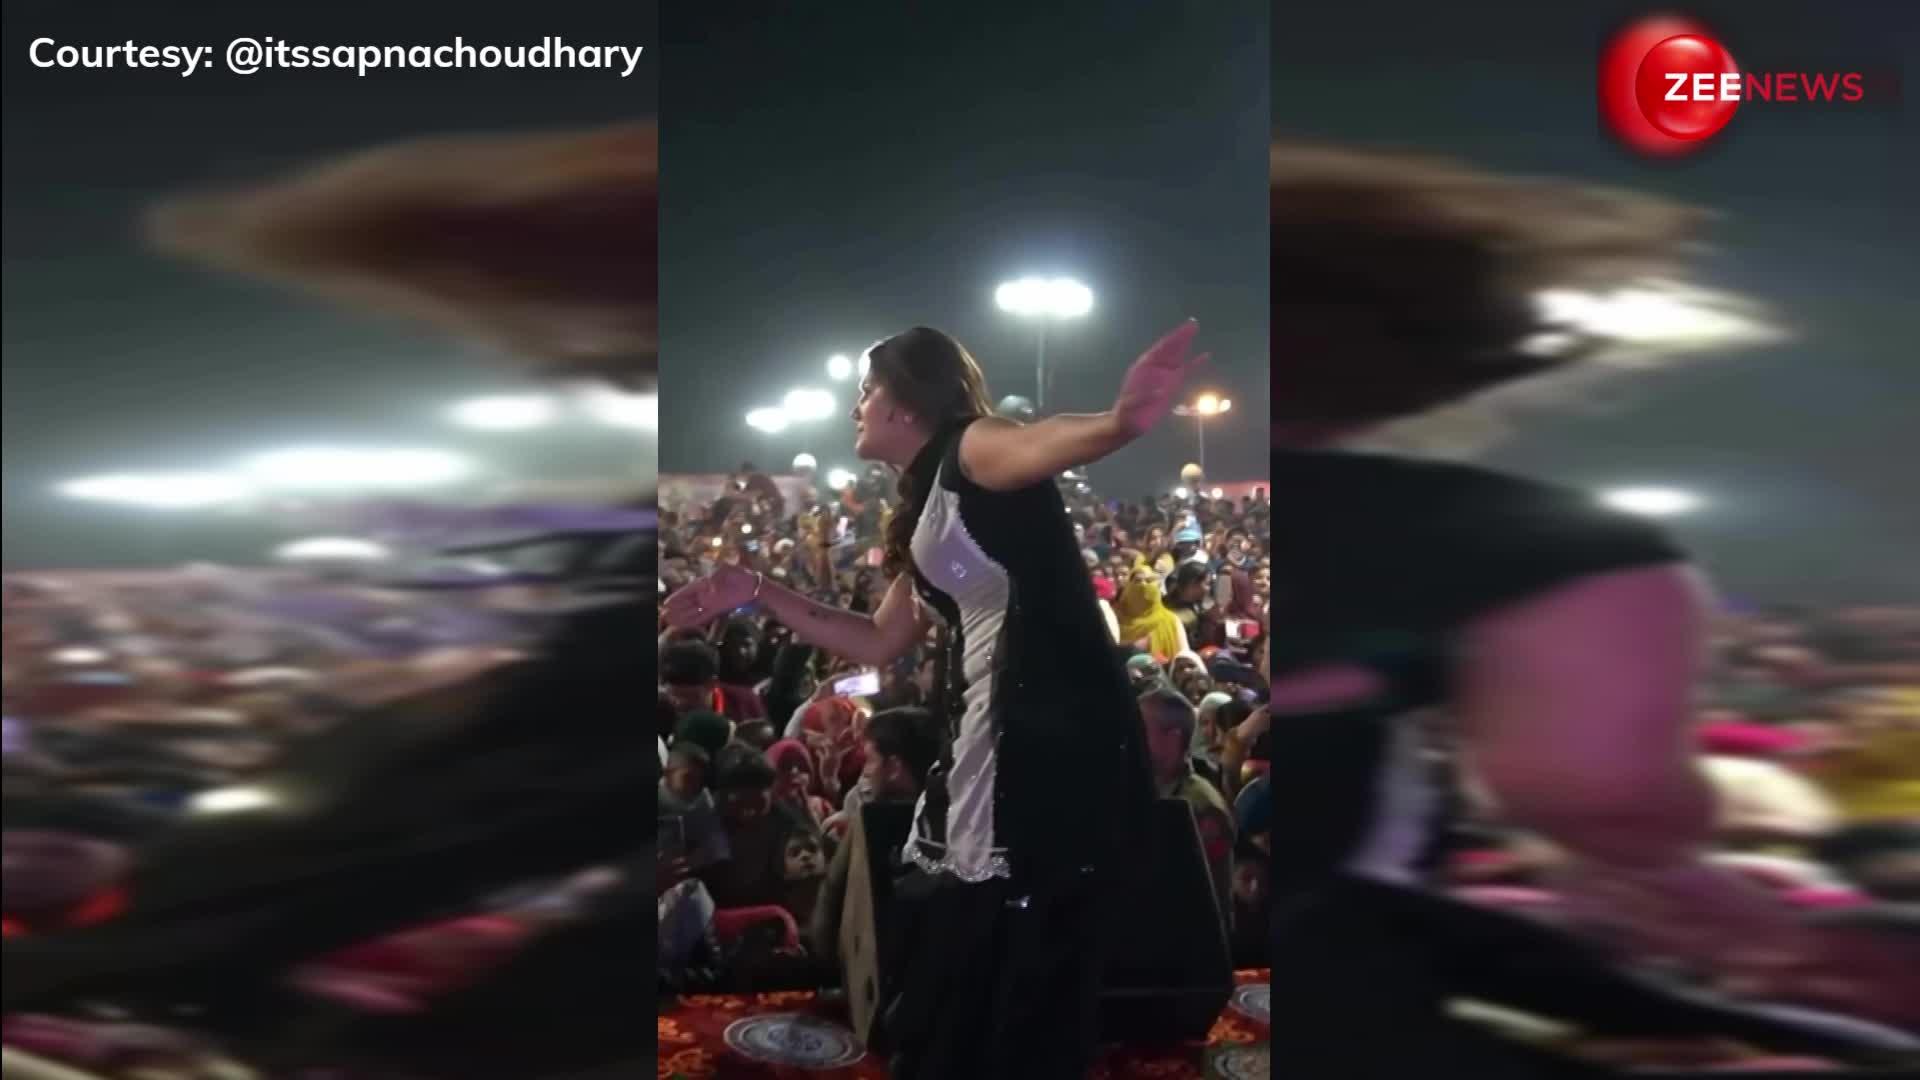 ओय होय होय! हरियाणवी गाने पर Sapna Chaudhary ने किया तड़का-भड़का डांस, काले सूट में दिखीं बला की खूबसूरत